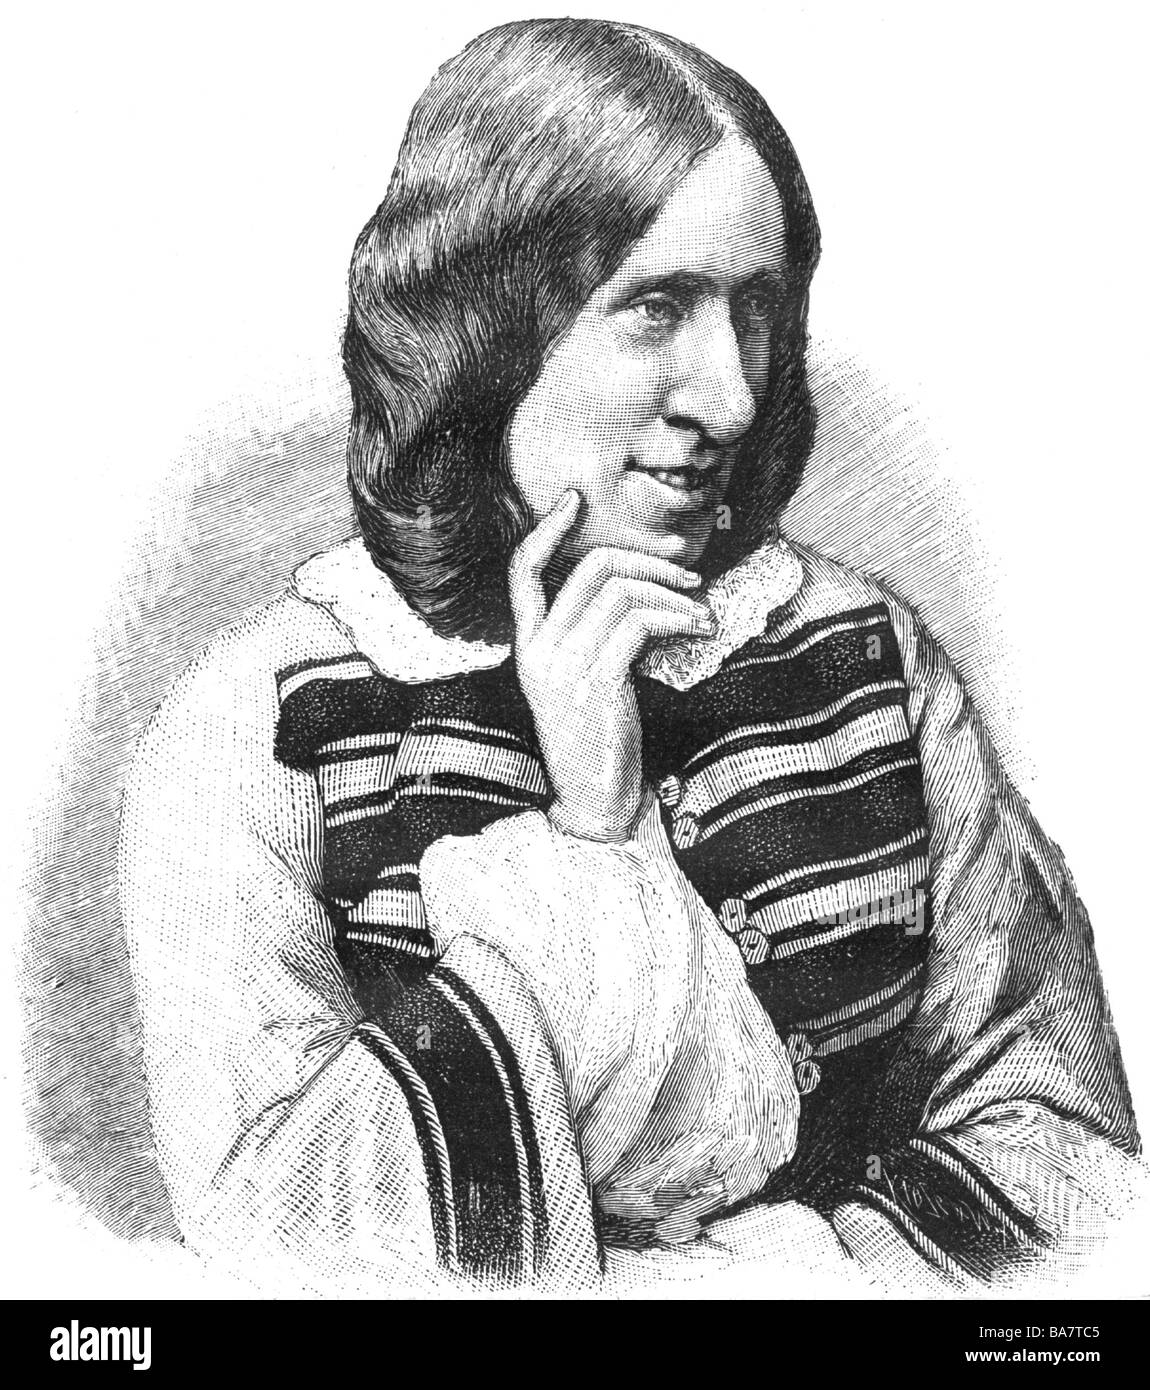 Eliot, George (Mary Ann Evans), 22.11.1819 - 22.15.1880, autor/escritor inglés, longitud media, grabado de madera, después de la fotografía, alrededor de 1870, Foto de stock